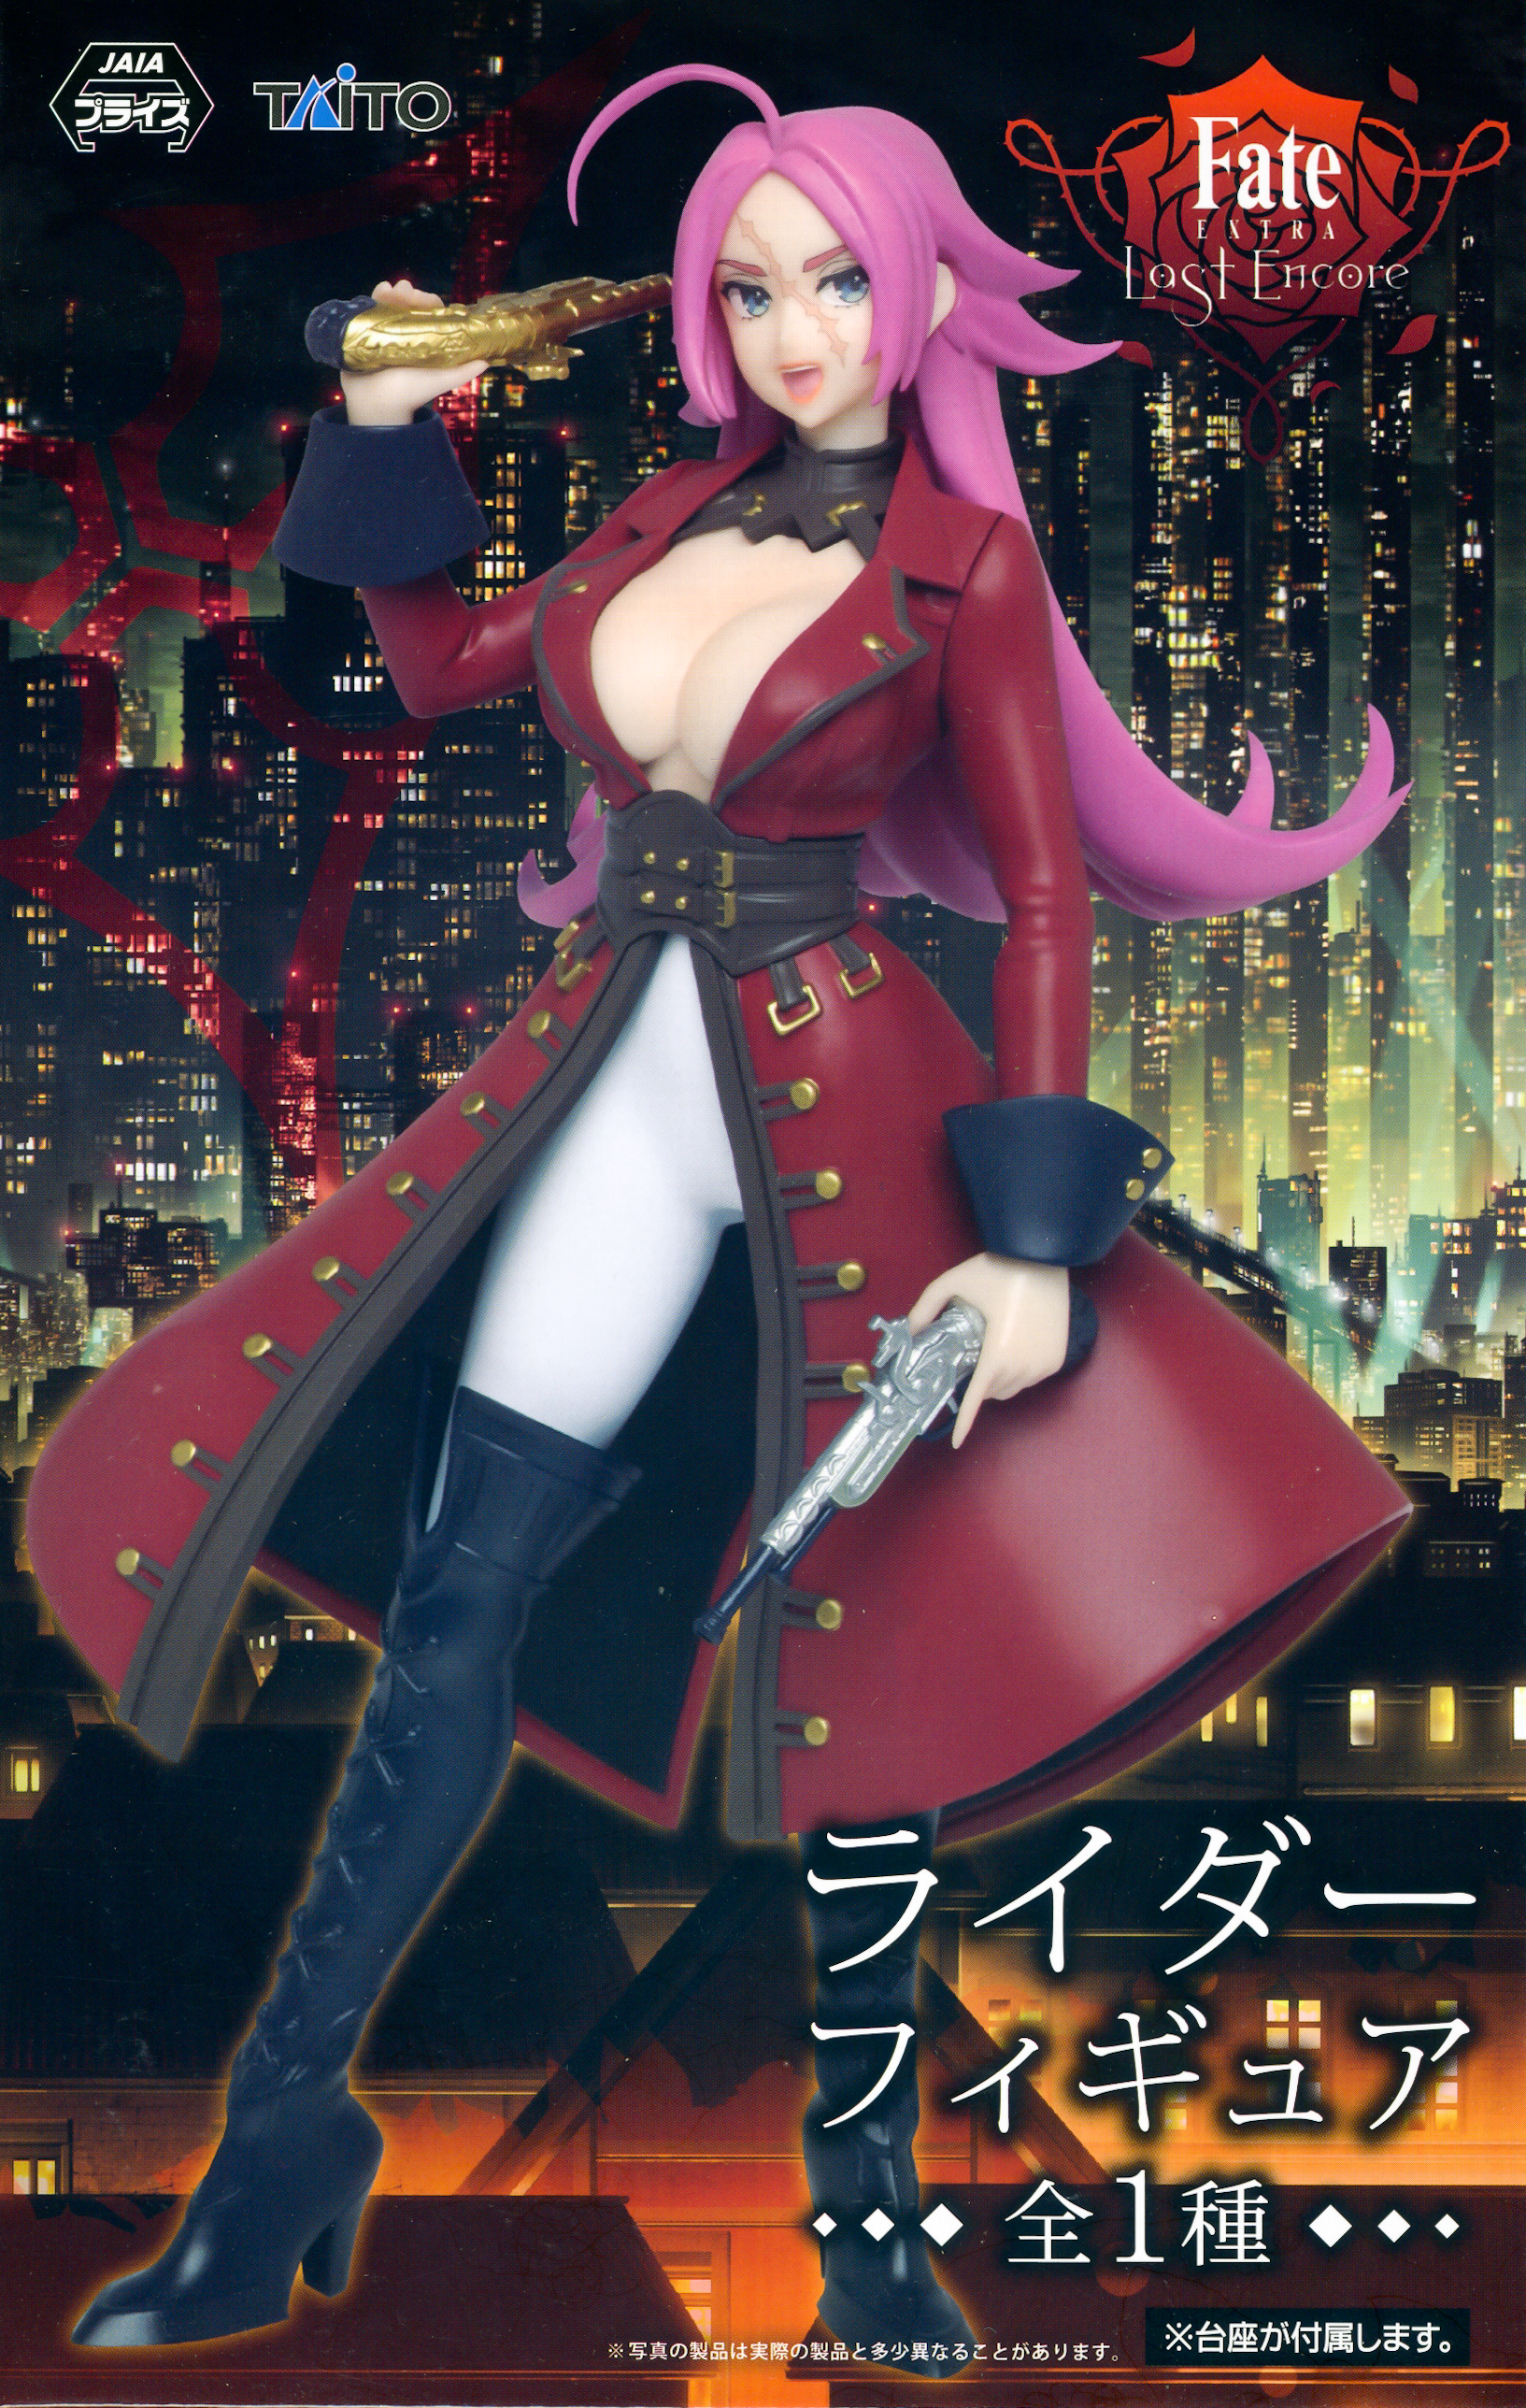 Nero Claudius | Fate/Extra: Last Encore Anime Style LoRA - Original |  Stable Diffusion LoRA | Civitai